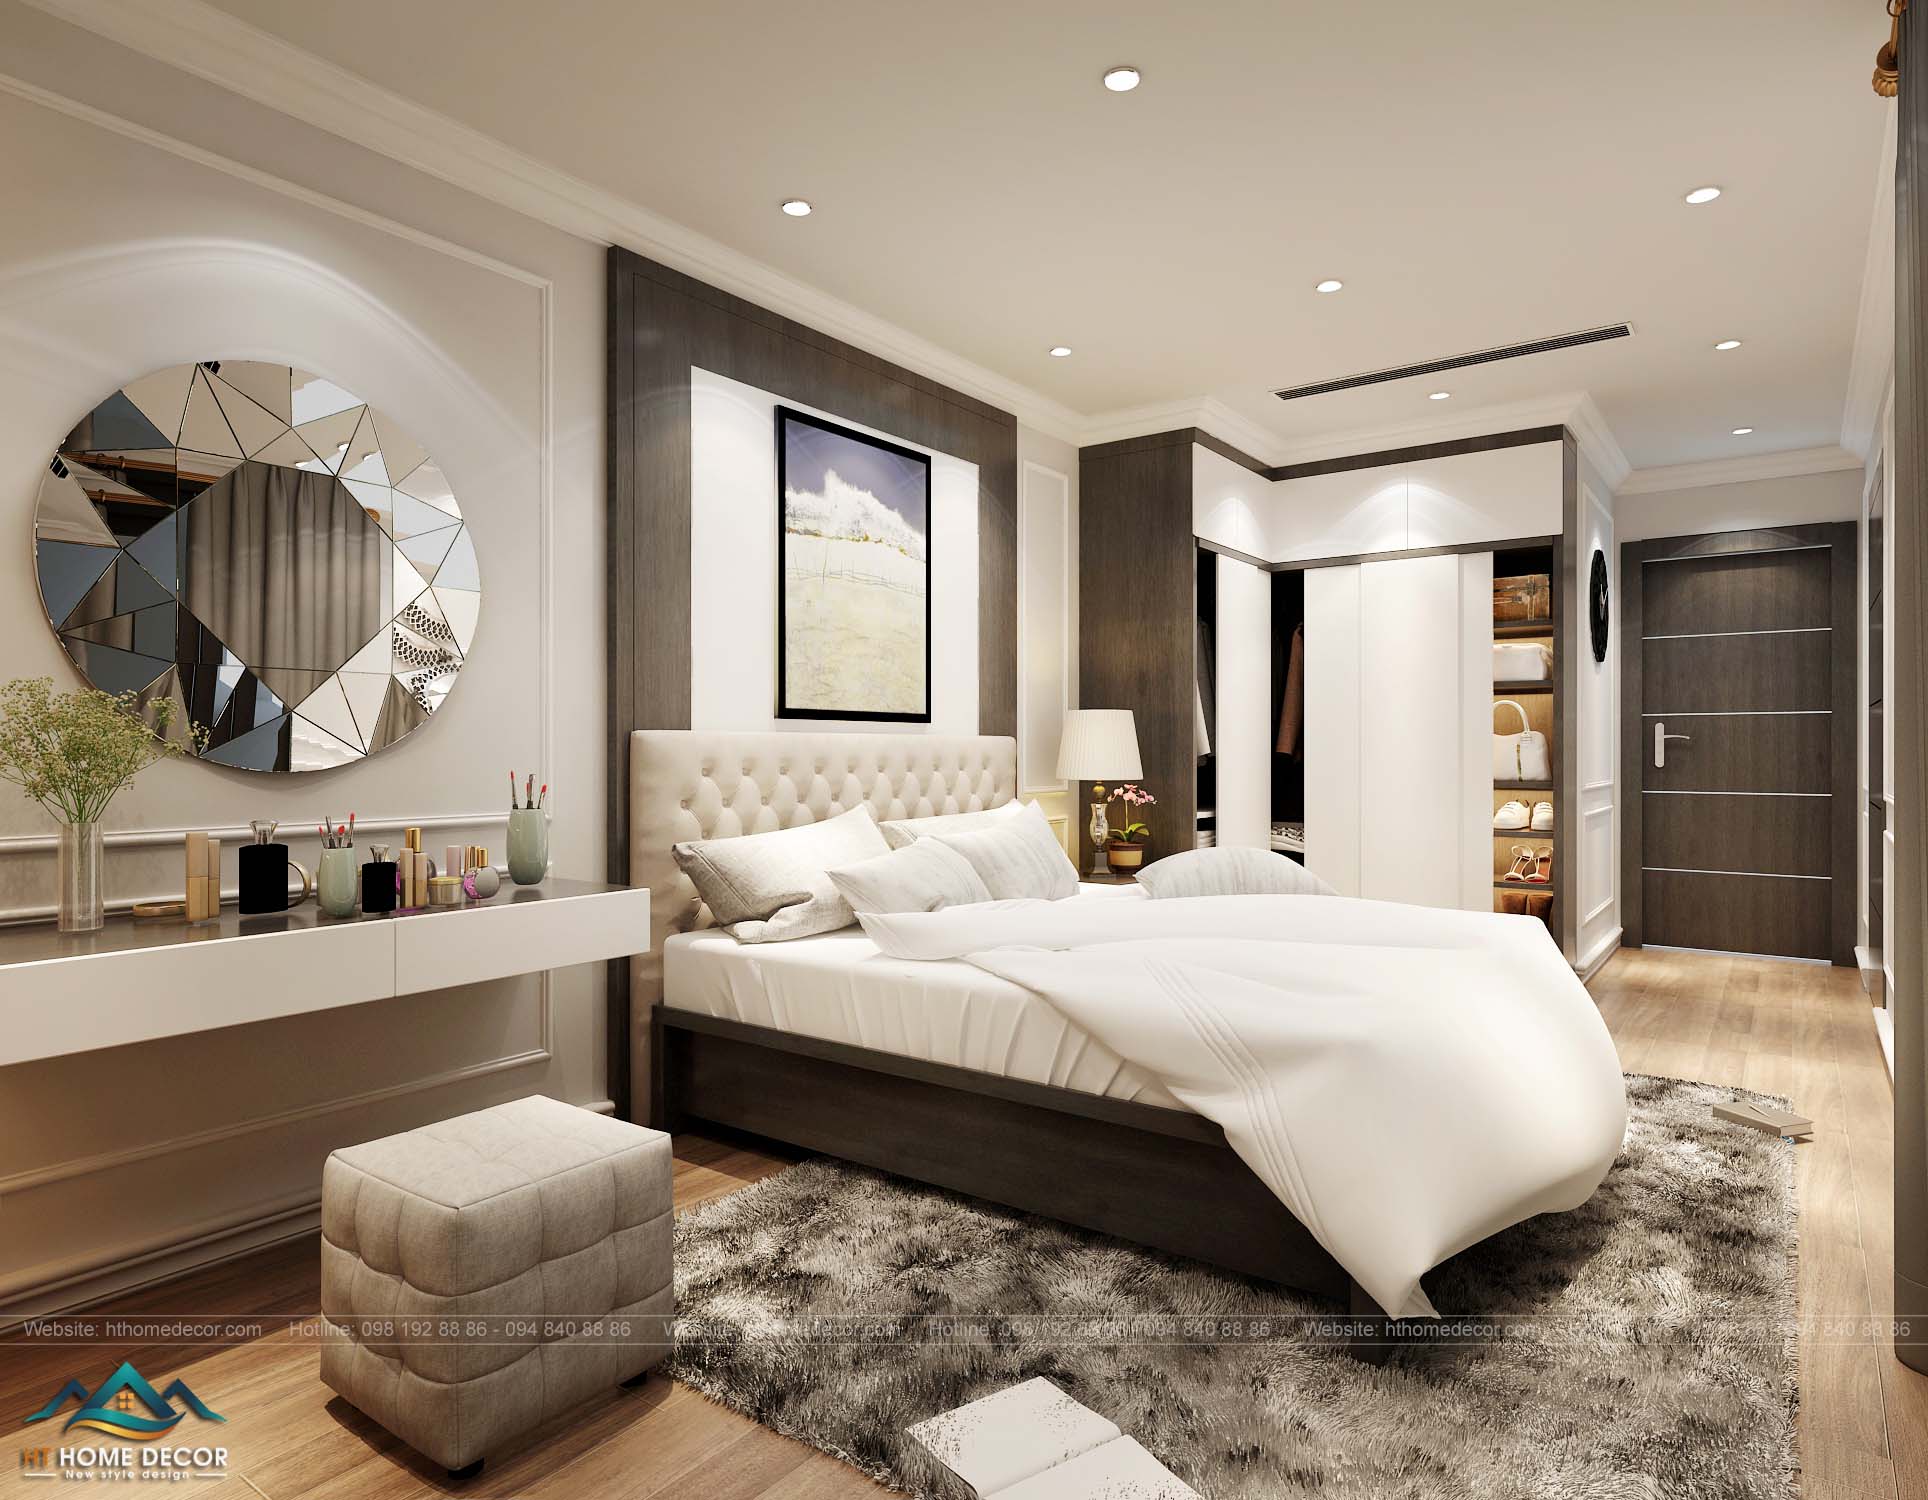 Chiếc thảm xám lông chuột giúp cho căn phòng thêm kiêu sa lộng lẫy giữa một nội thất hiện đại.